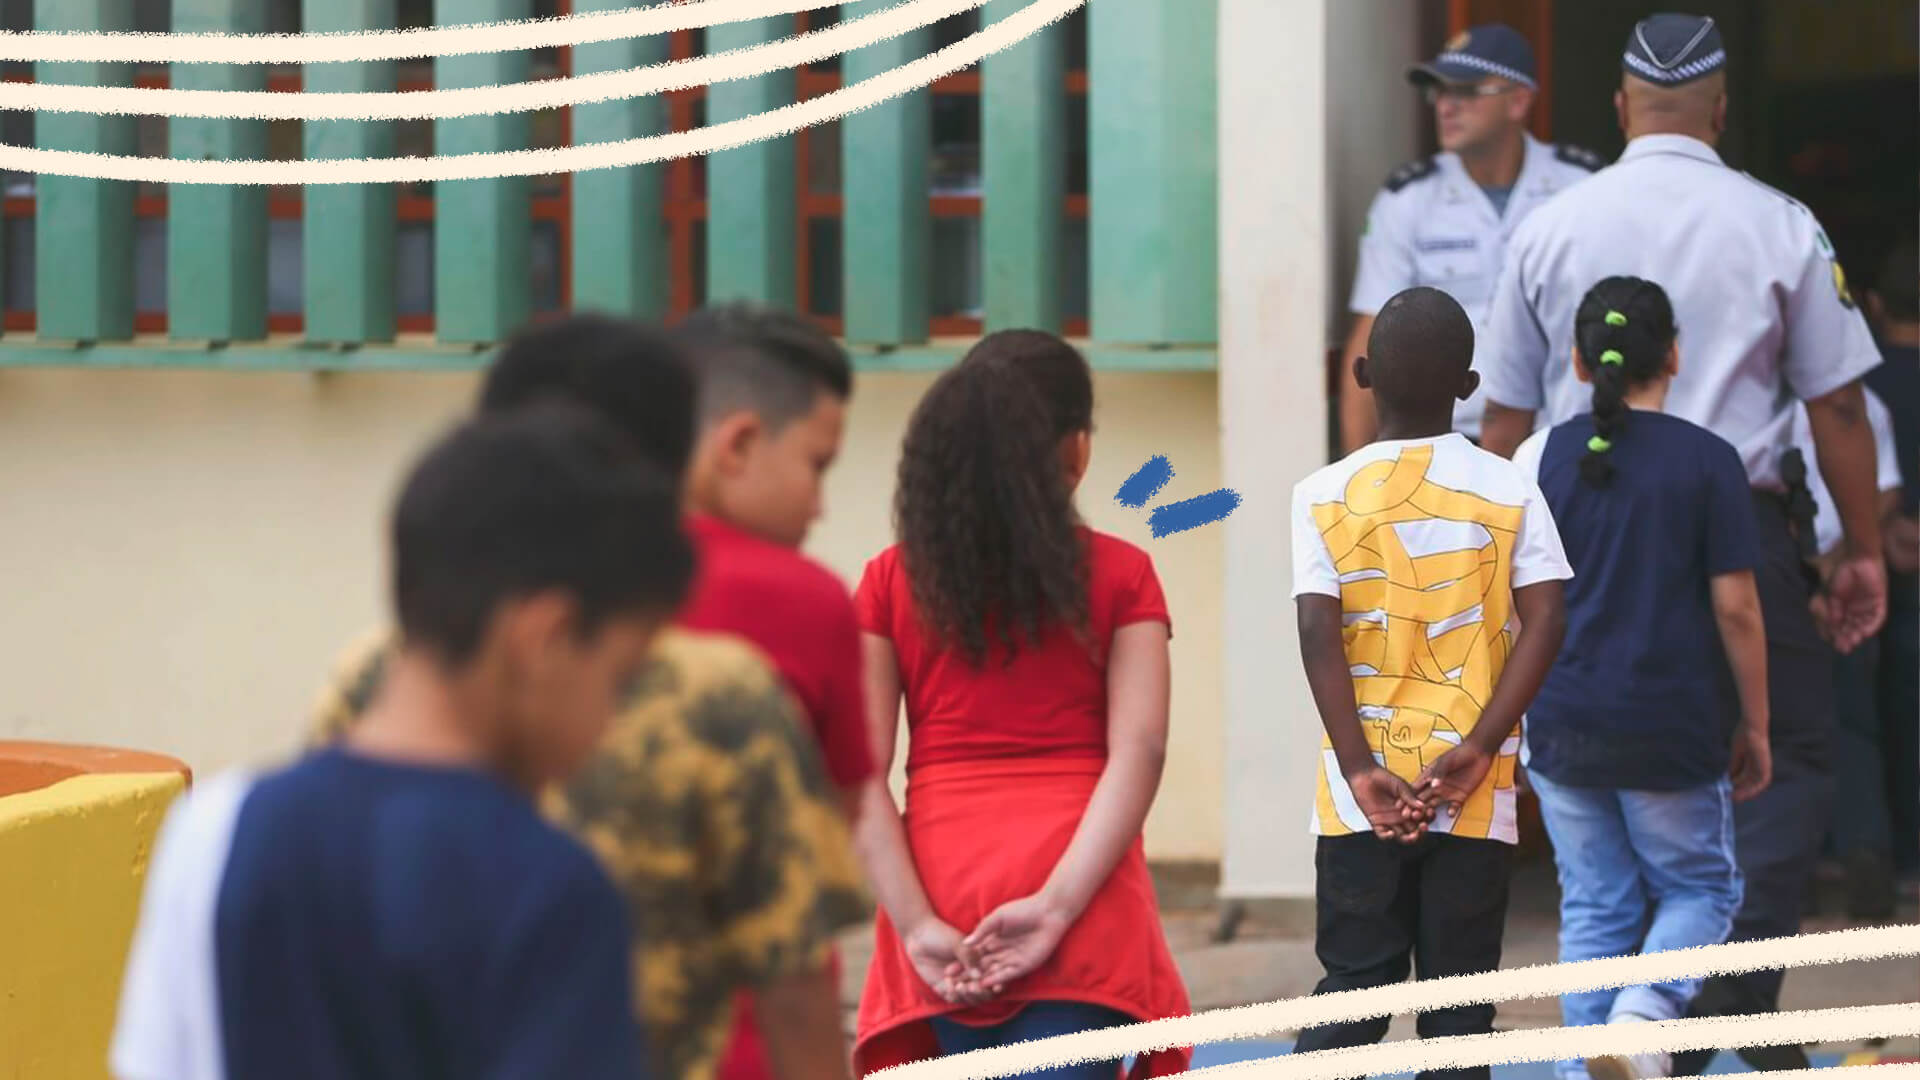 crianças de costas vestindo roupas coloridas estão em fila aguardando para entrar em uma escola com militares na porta.